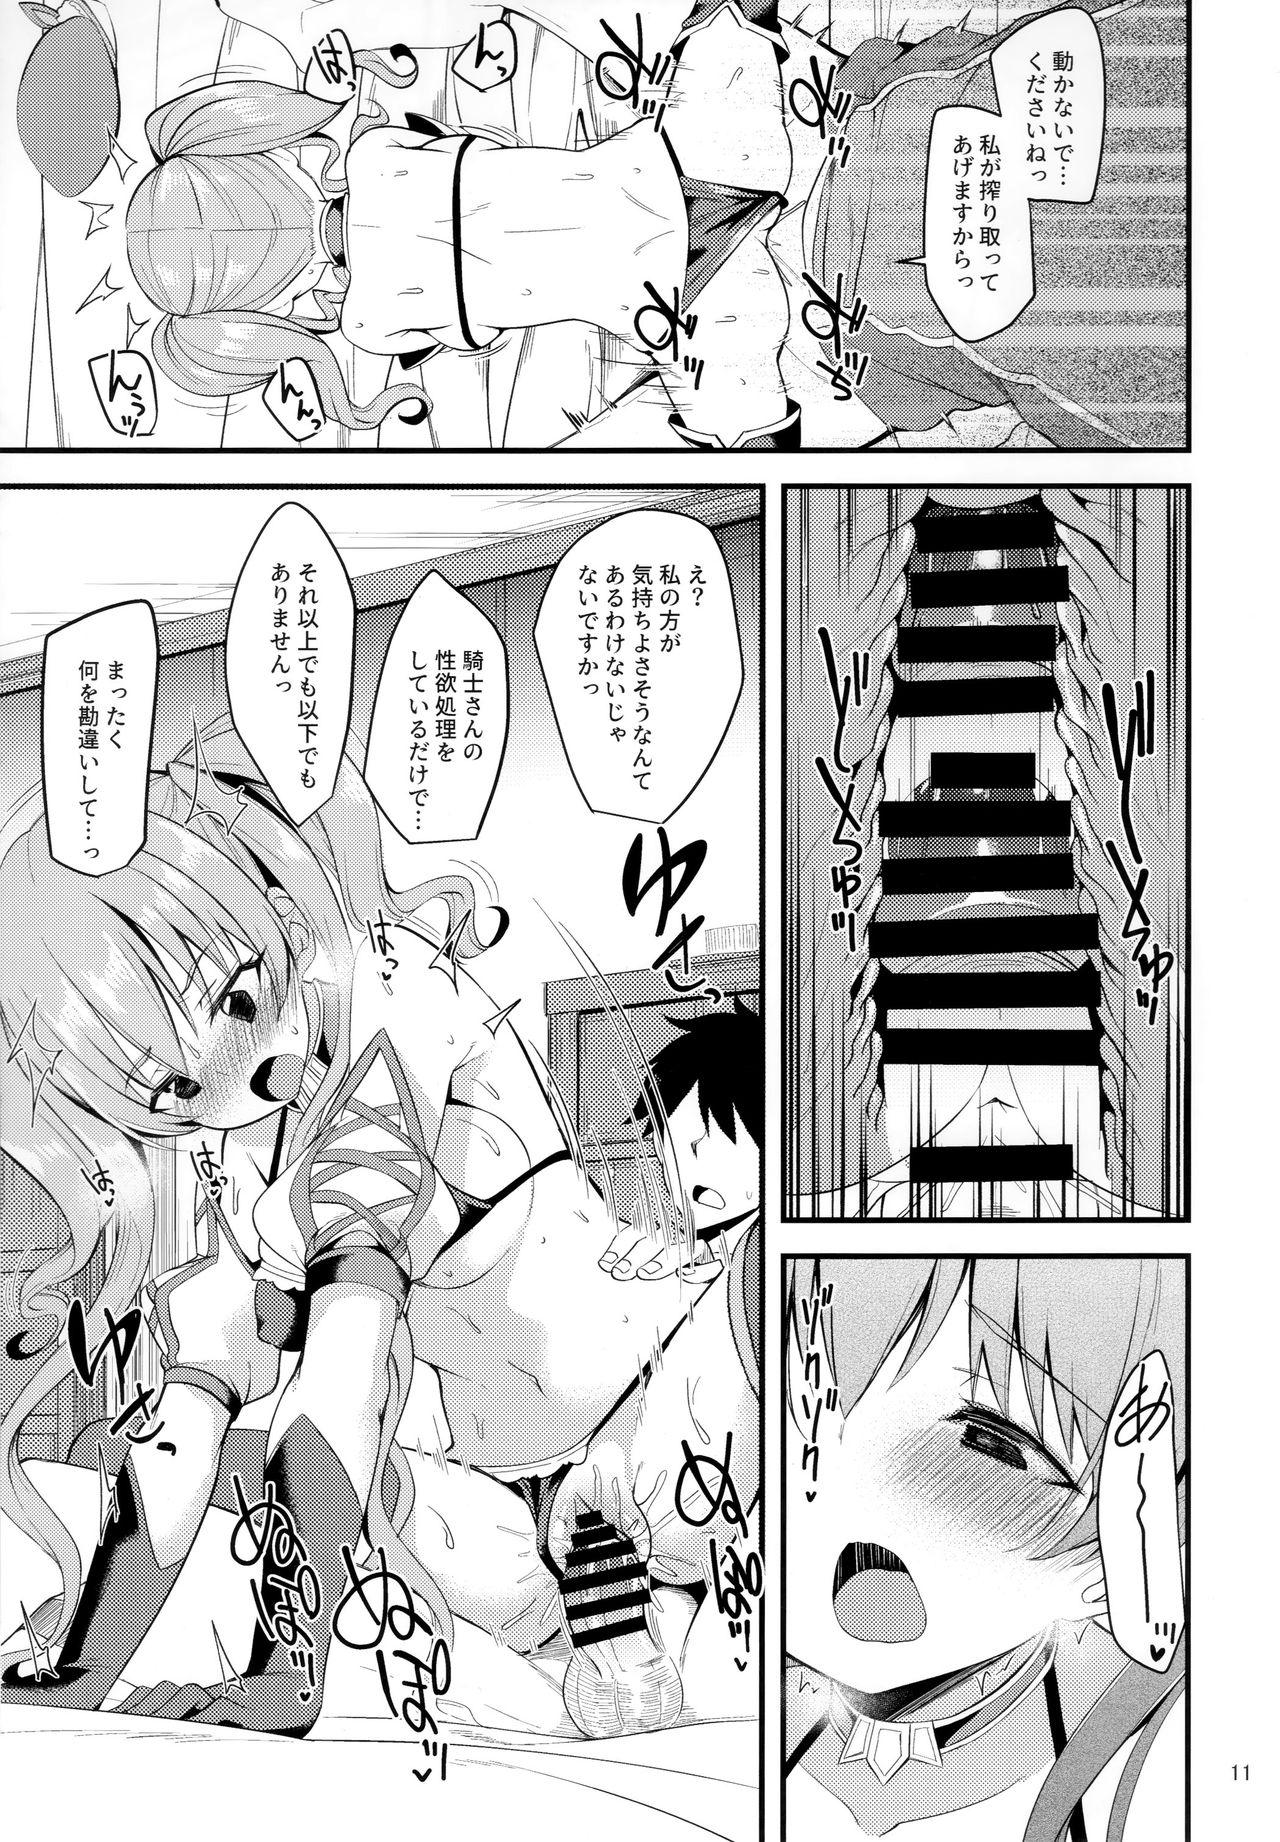 Behind Tsumugi Make Heroine Move!! 02 - Princess connect Travesti - Page 10